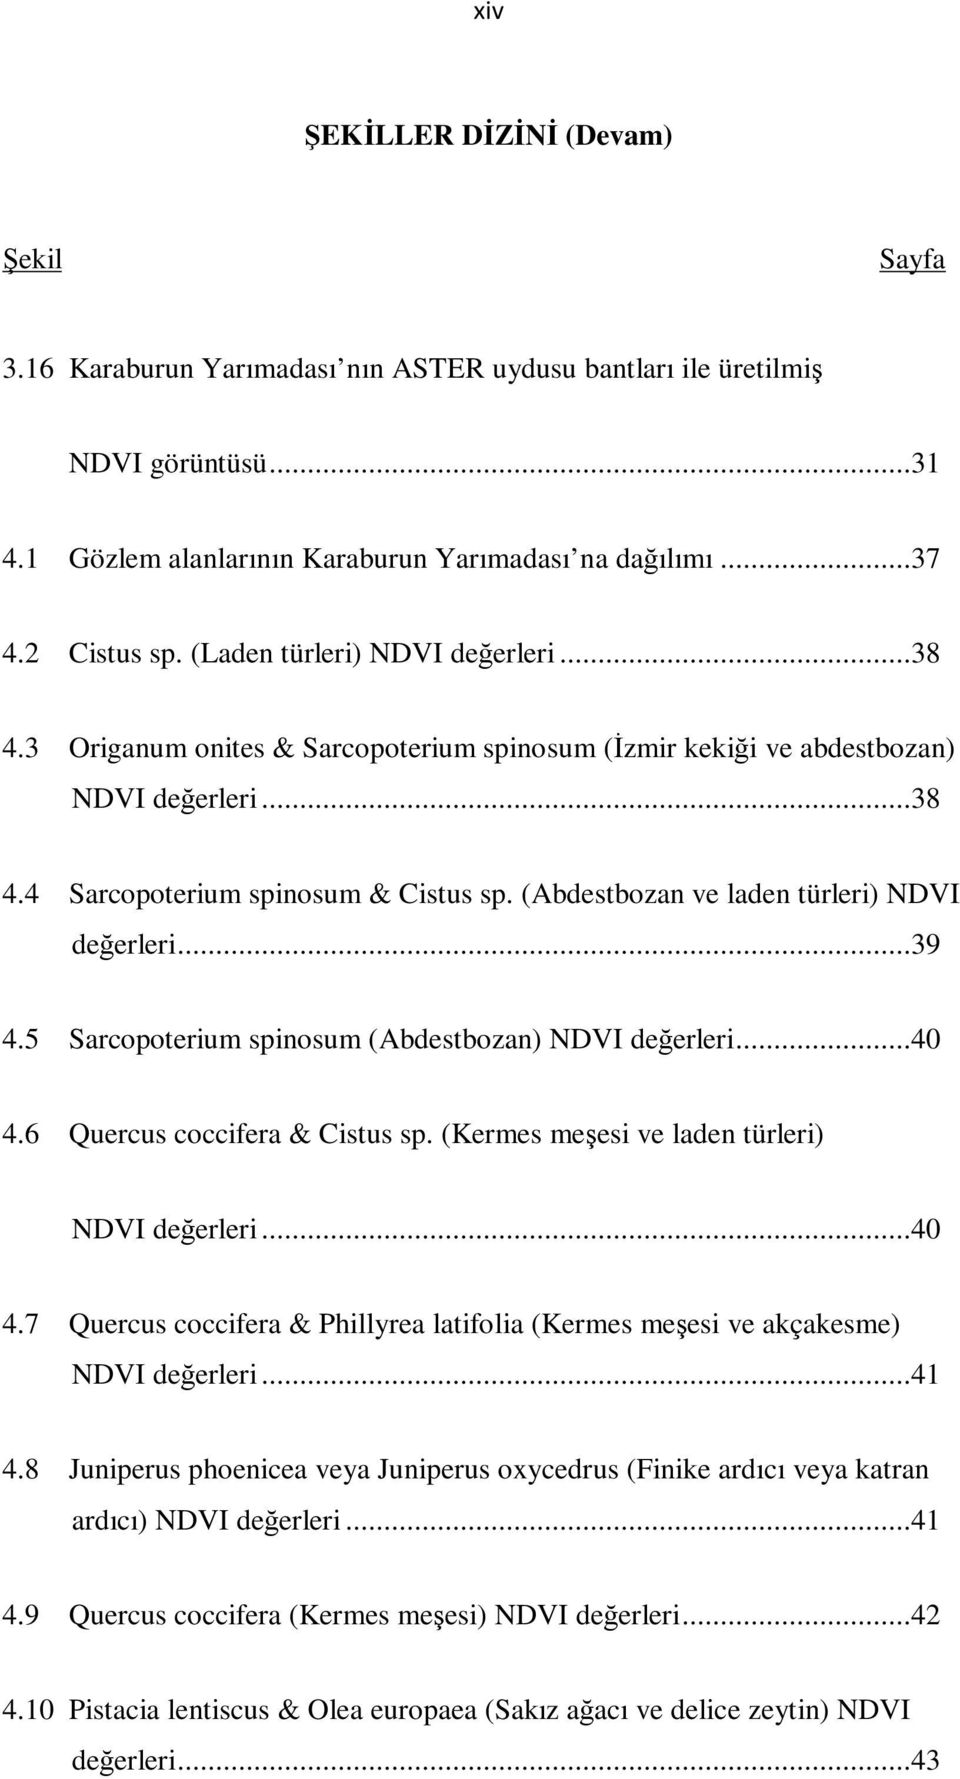 (Abdestbozan ve laden türleri) NDVI değerleri...39 4.5 Sarcopoterium spinosum (Abdestbozan) NDVI değerleri...40 4.6 Quercus coccifera & Cistus sp. (Kermes meşesi ve laden türleri) NDVI değerleri...40 4.7 Quercus coccifera & Phillyrea latifolia (Kermes meşesi ve akçakesme) NDVI değerleri.